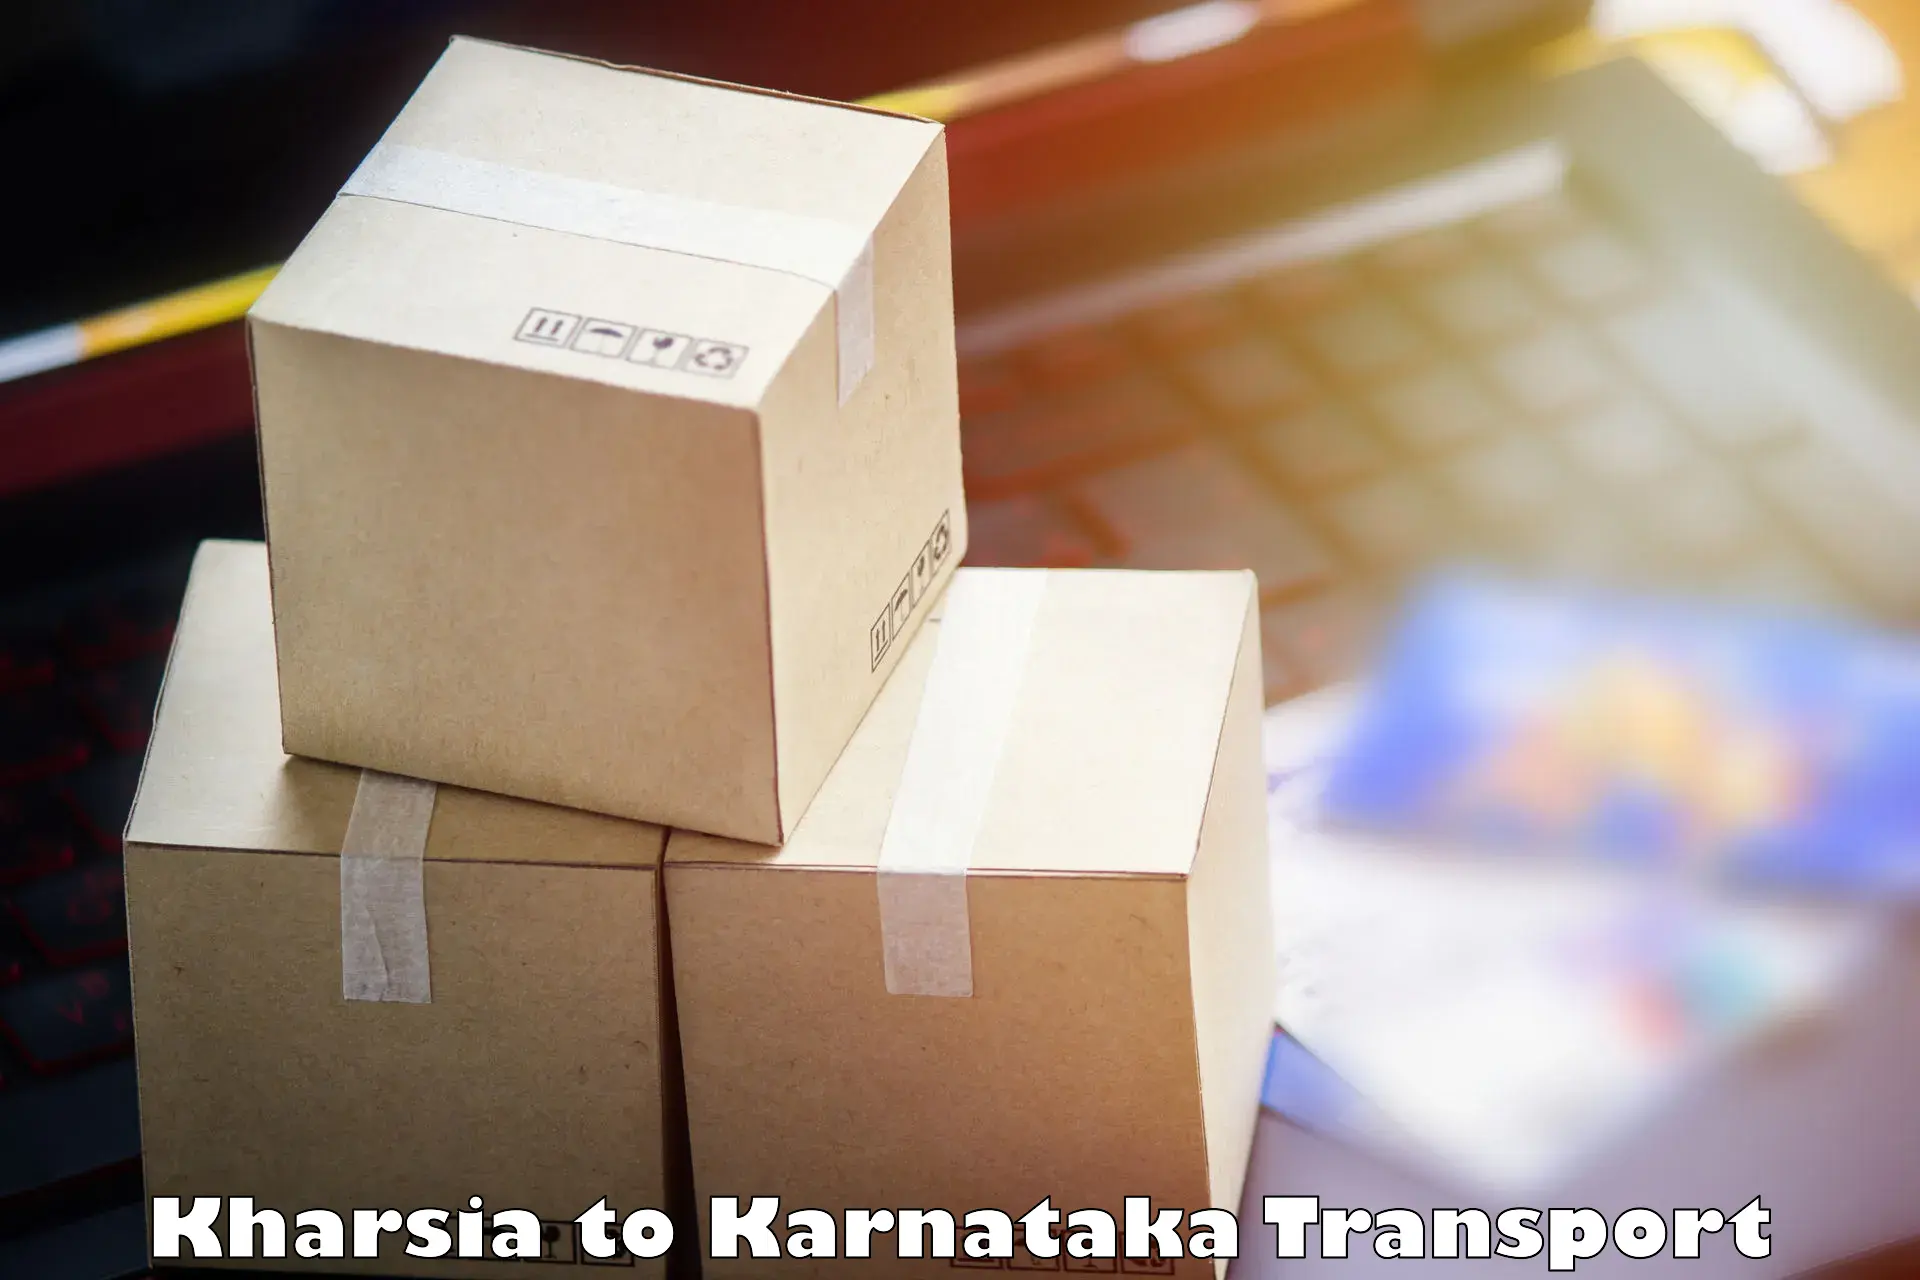 Furniture transport service Kharsia to Srirangapatna